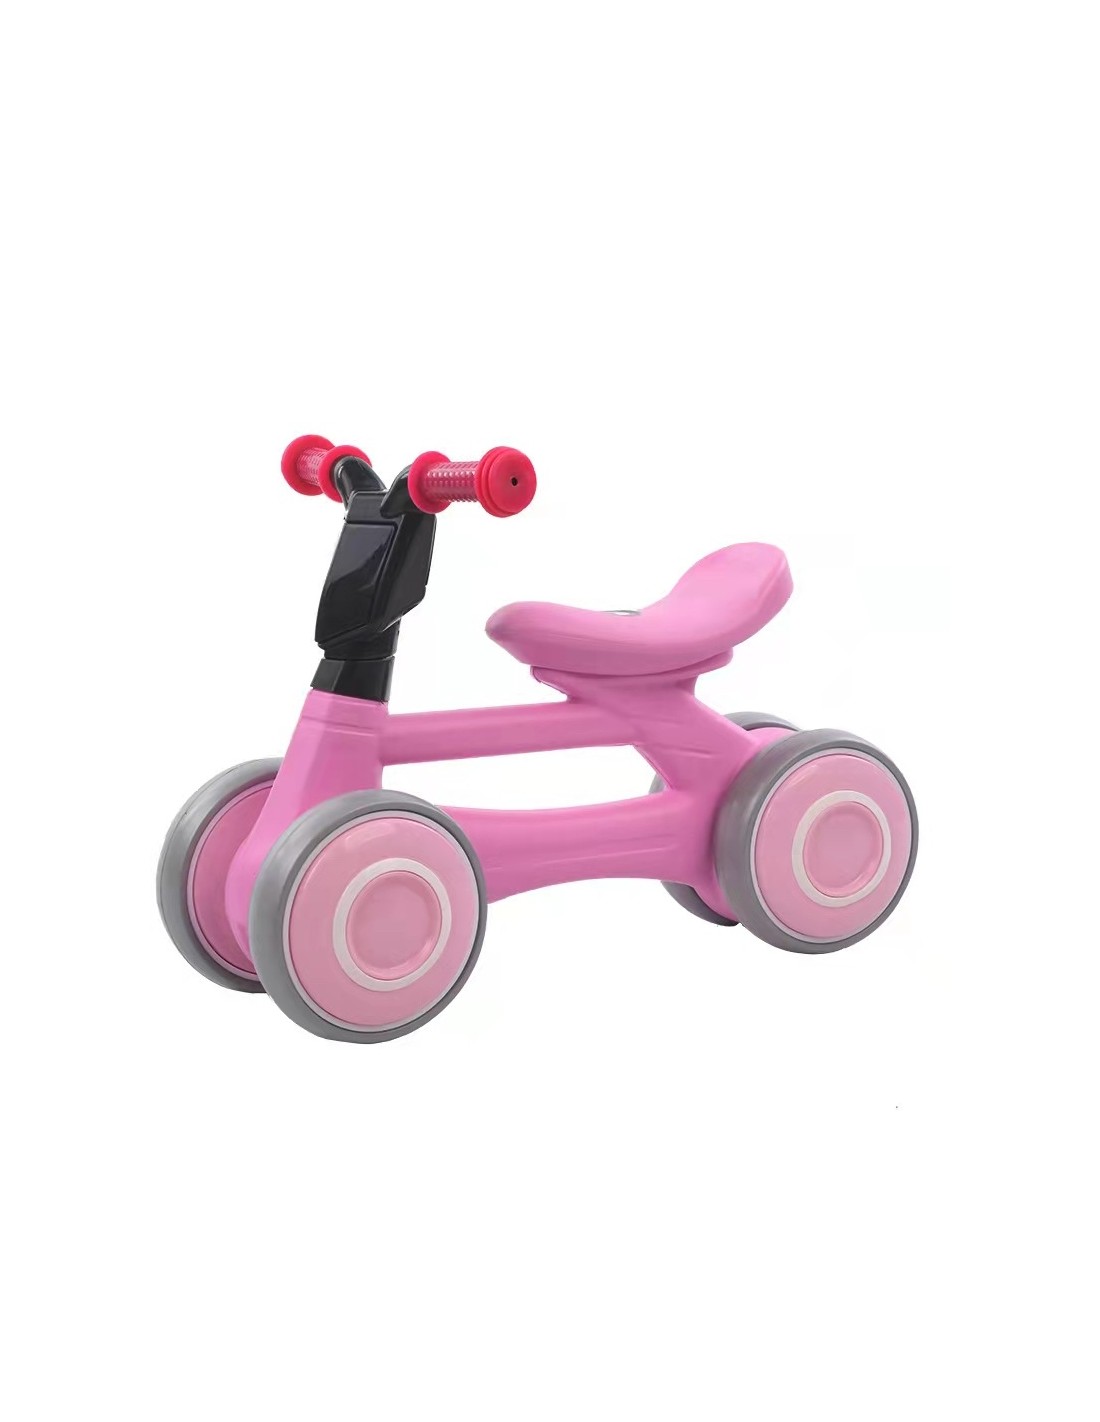 Paspiriamas balansinis dviratukas 4 ratukai, rožinė spalva